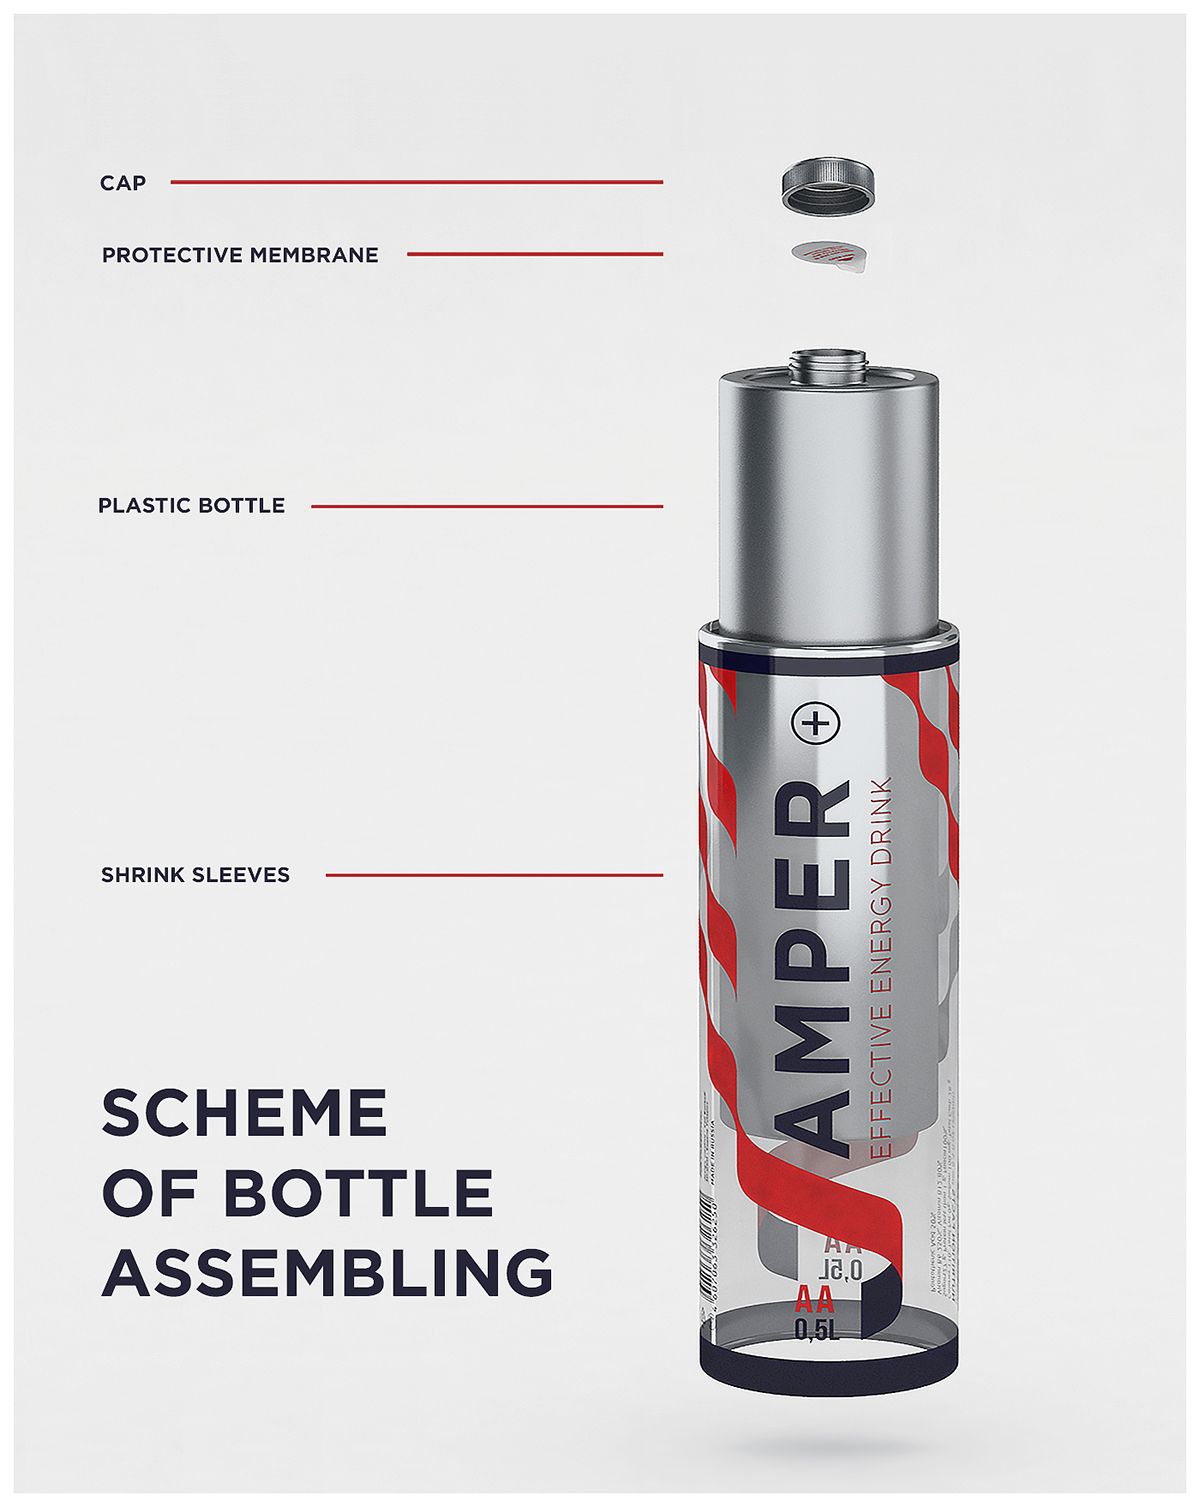 jumper energy drink Pack bottle battery ampere